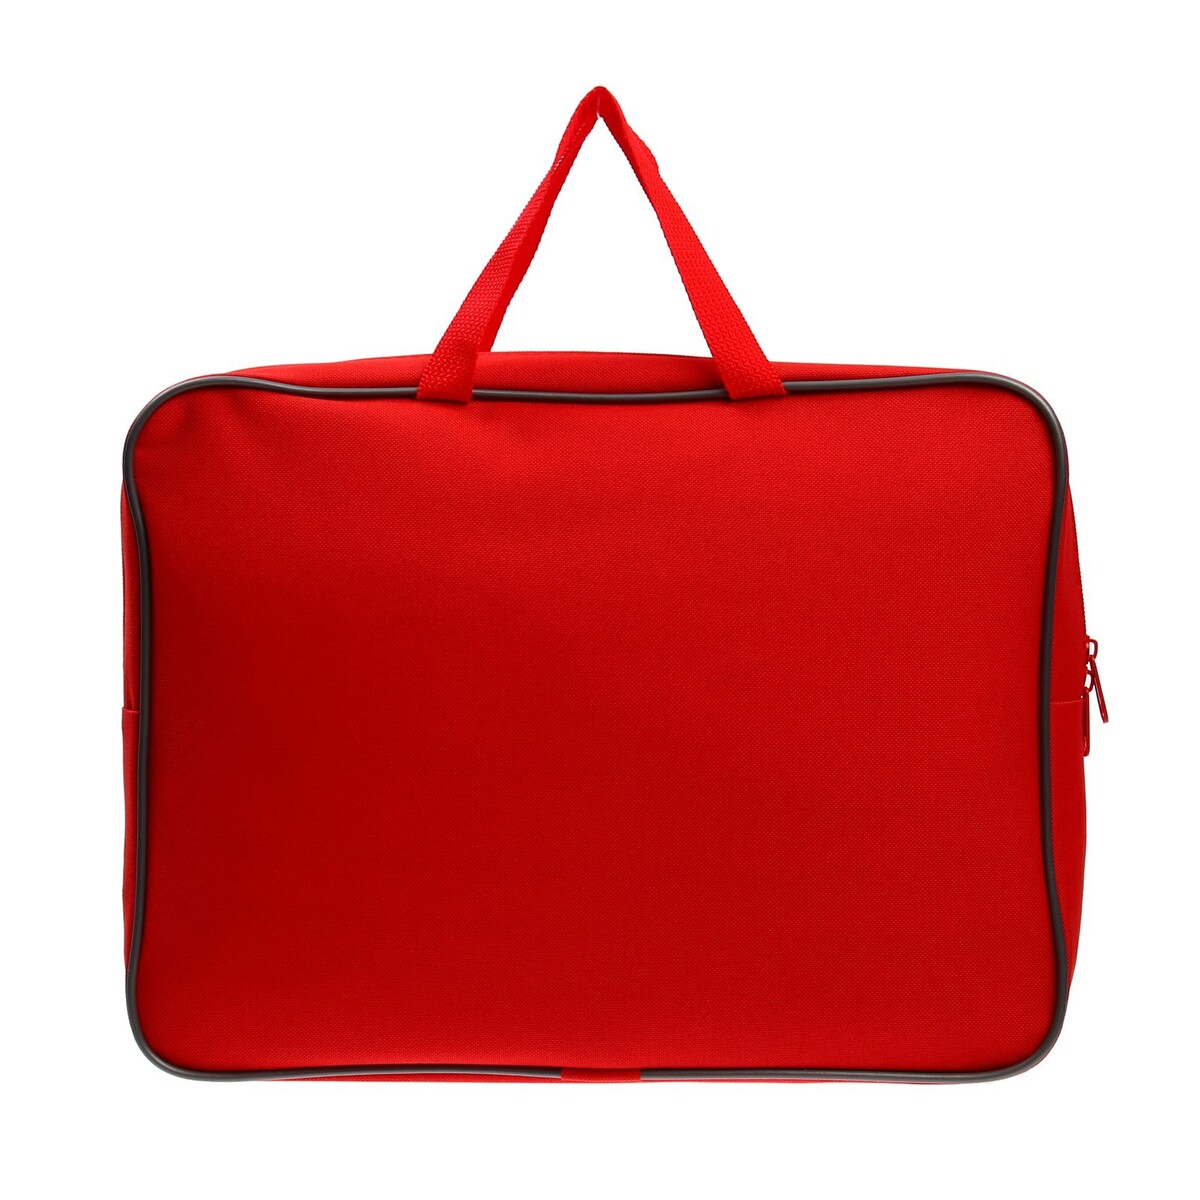 Папка с ручками а4, 360 х 270 х 80 мм, текстильная, внутренний карман, красная 1ш48 сумка текстильная одно 32 3 38 отд на молнии н карман белый